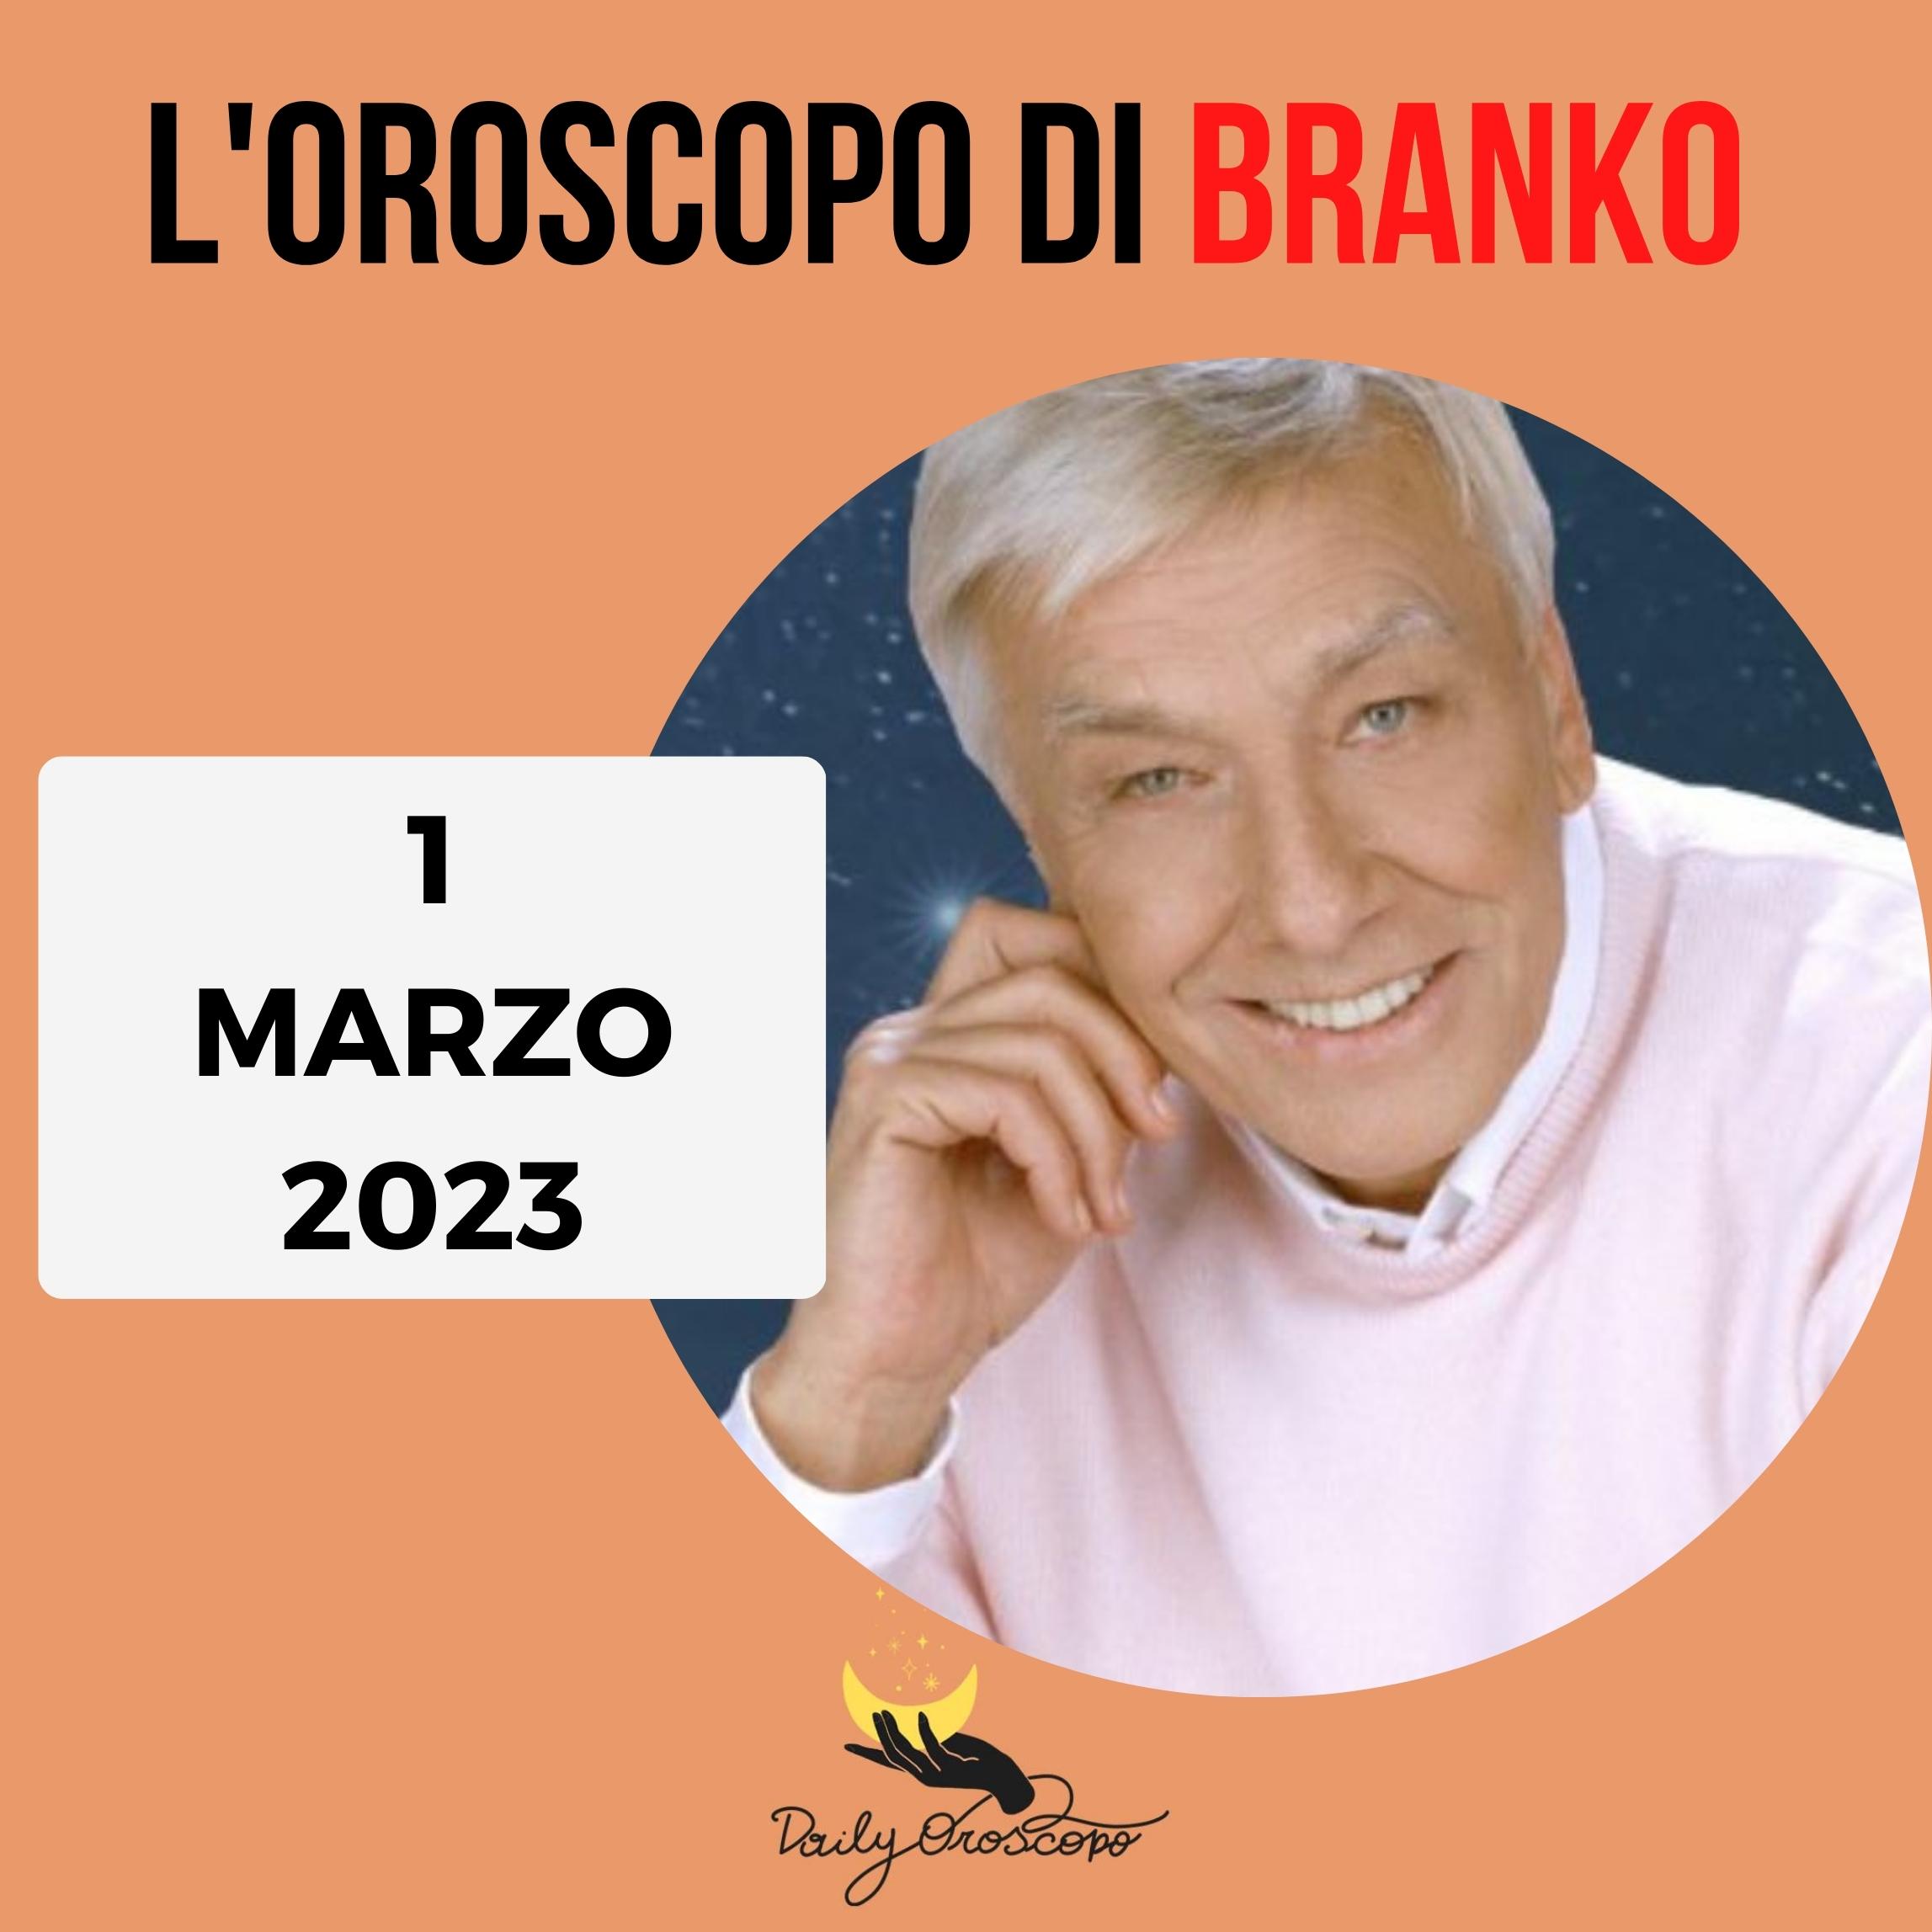 Oroscopo Branko oggi 1 marzo 2023